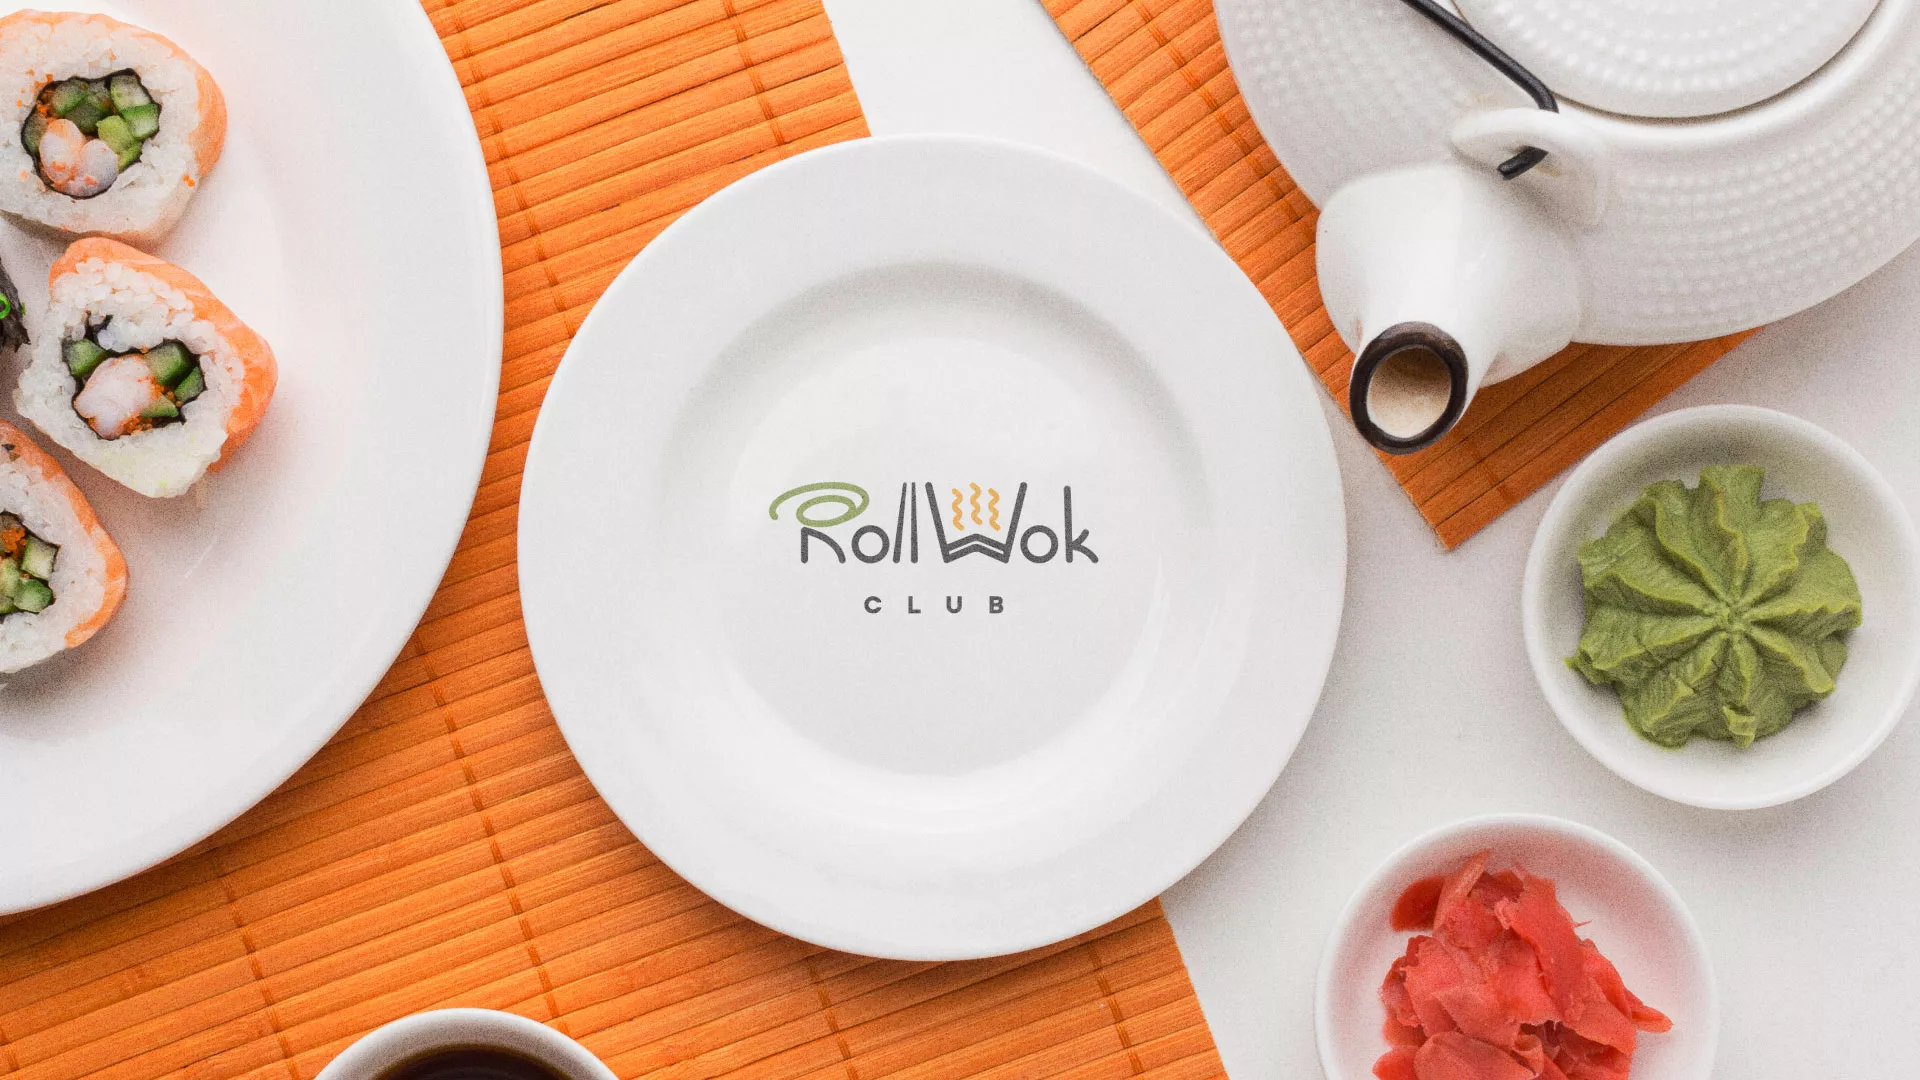 Разработка логотипа и фирменного стиля суши-бара «Roll Wok Club» в Владивостоке